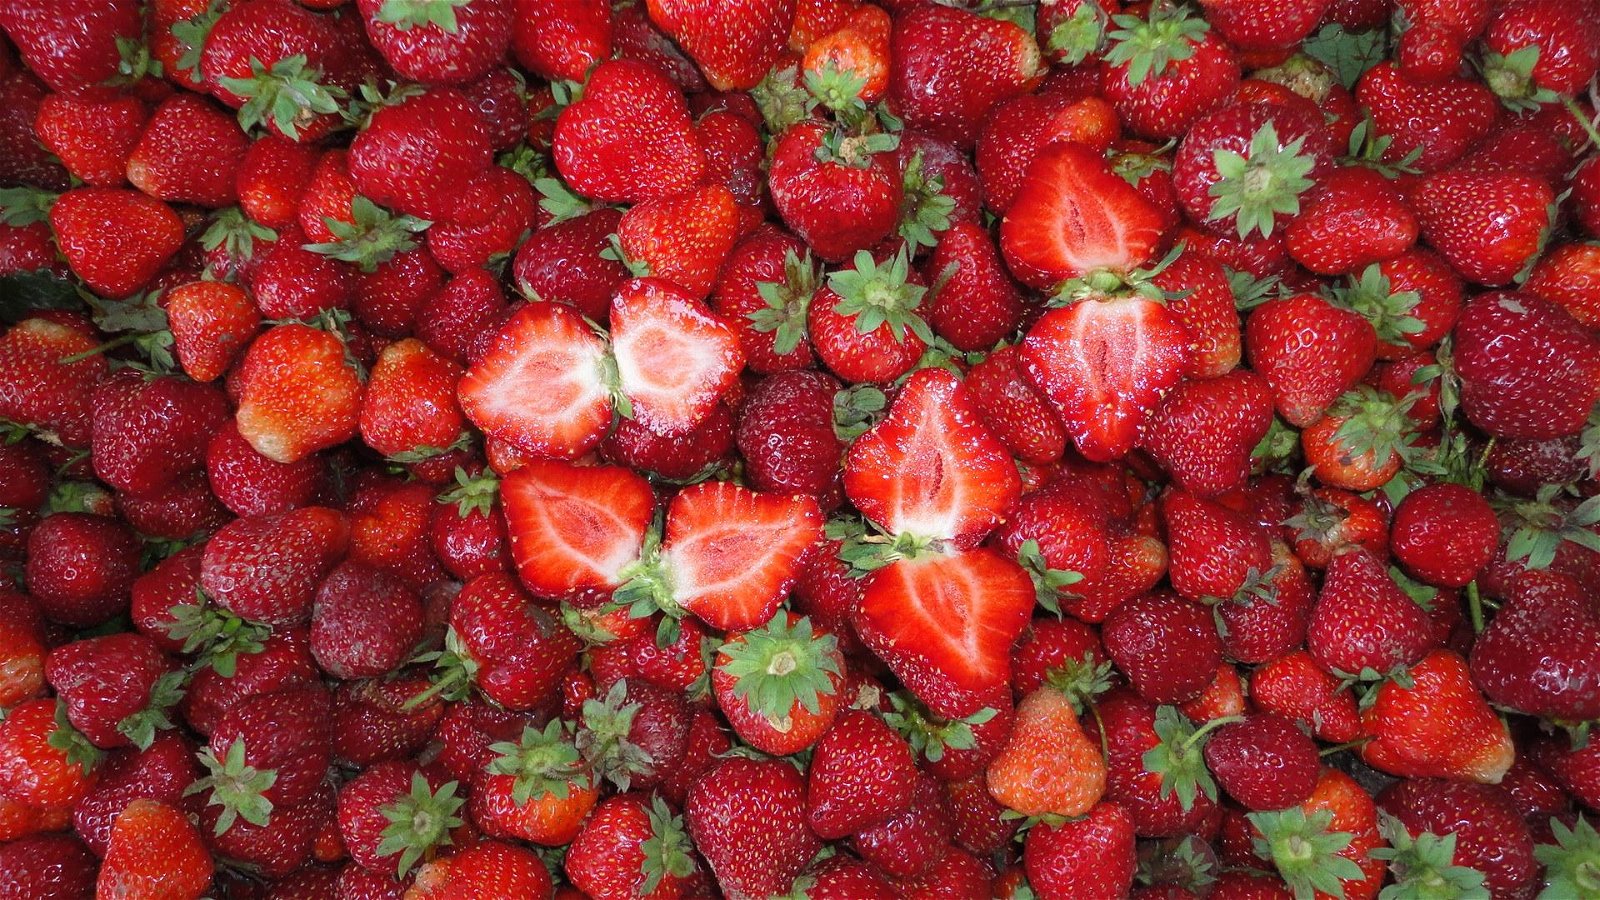 冷凍草莓,速凍草莓,冷凍草莓泥,速凍草莓泥 6